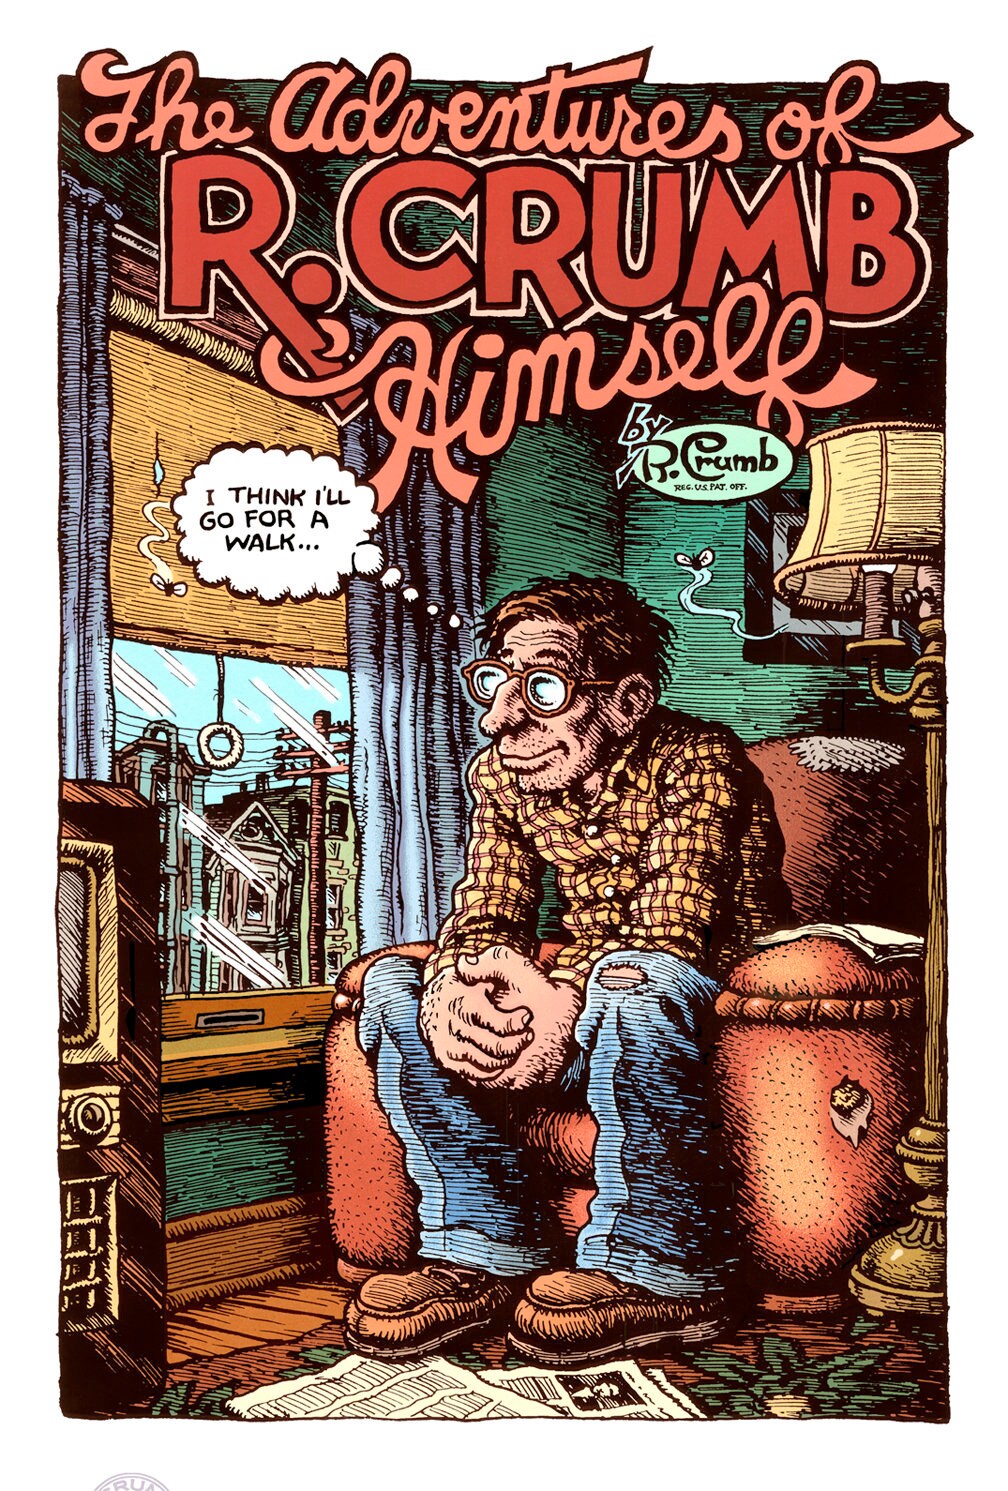 Robert crumb comics